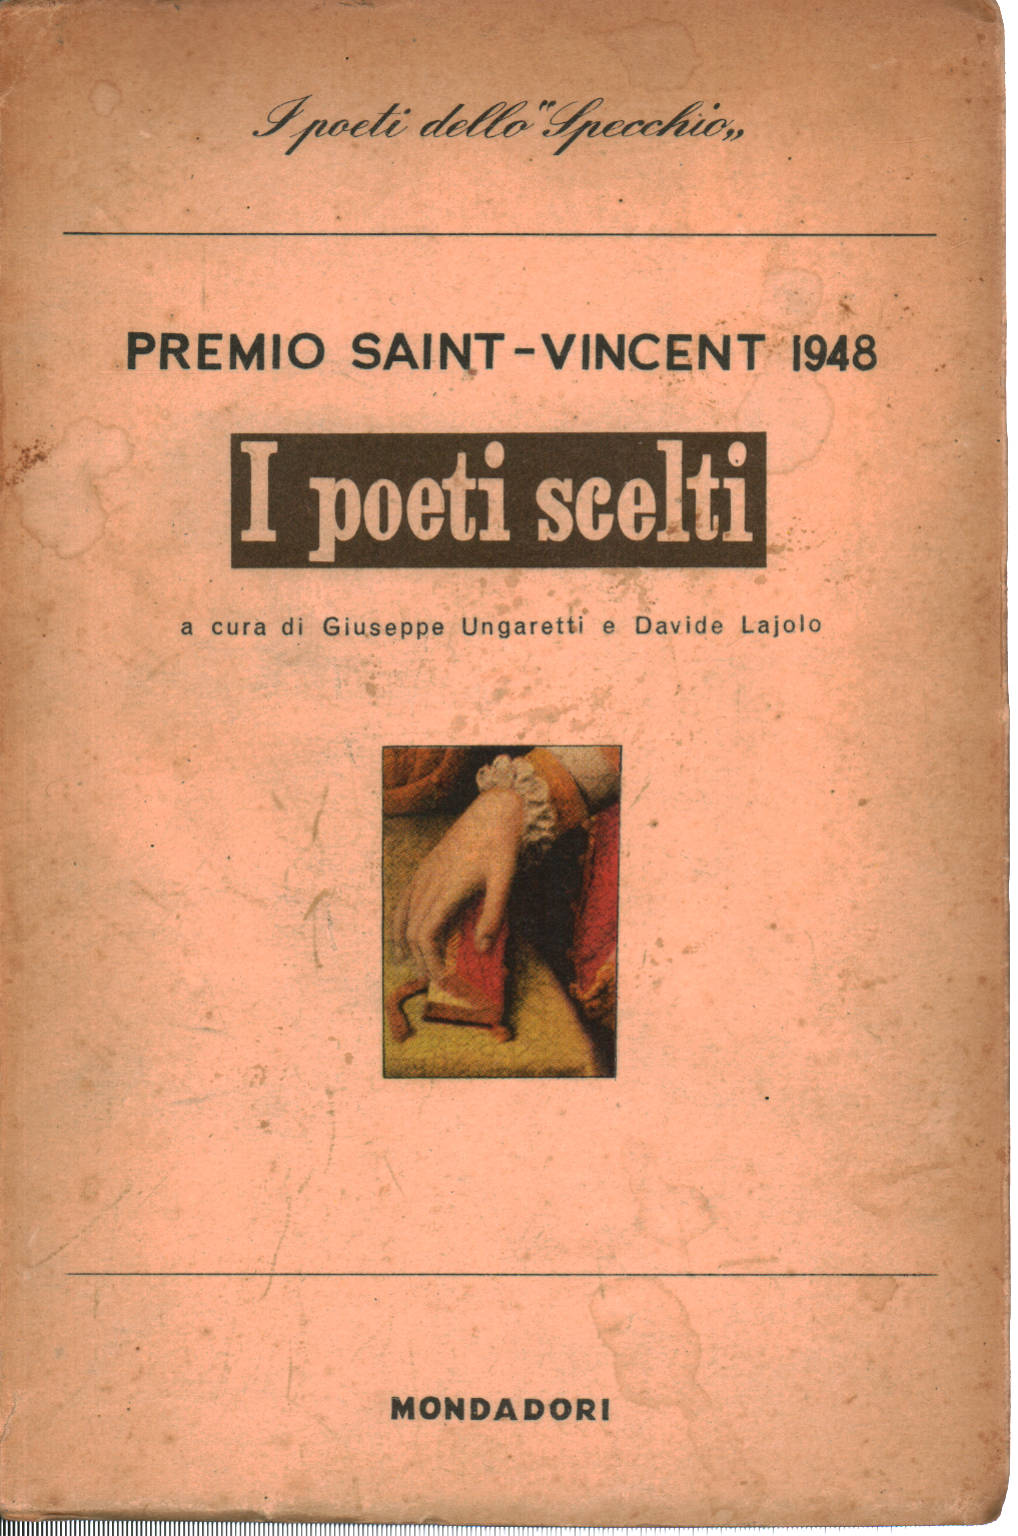 The poets chosen, Giuseppe Ungaretti Davide Lajolo